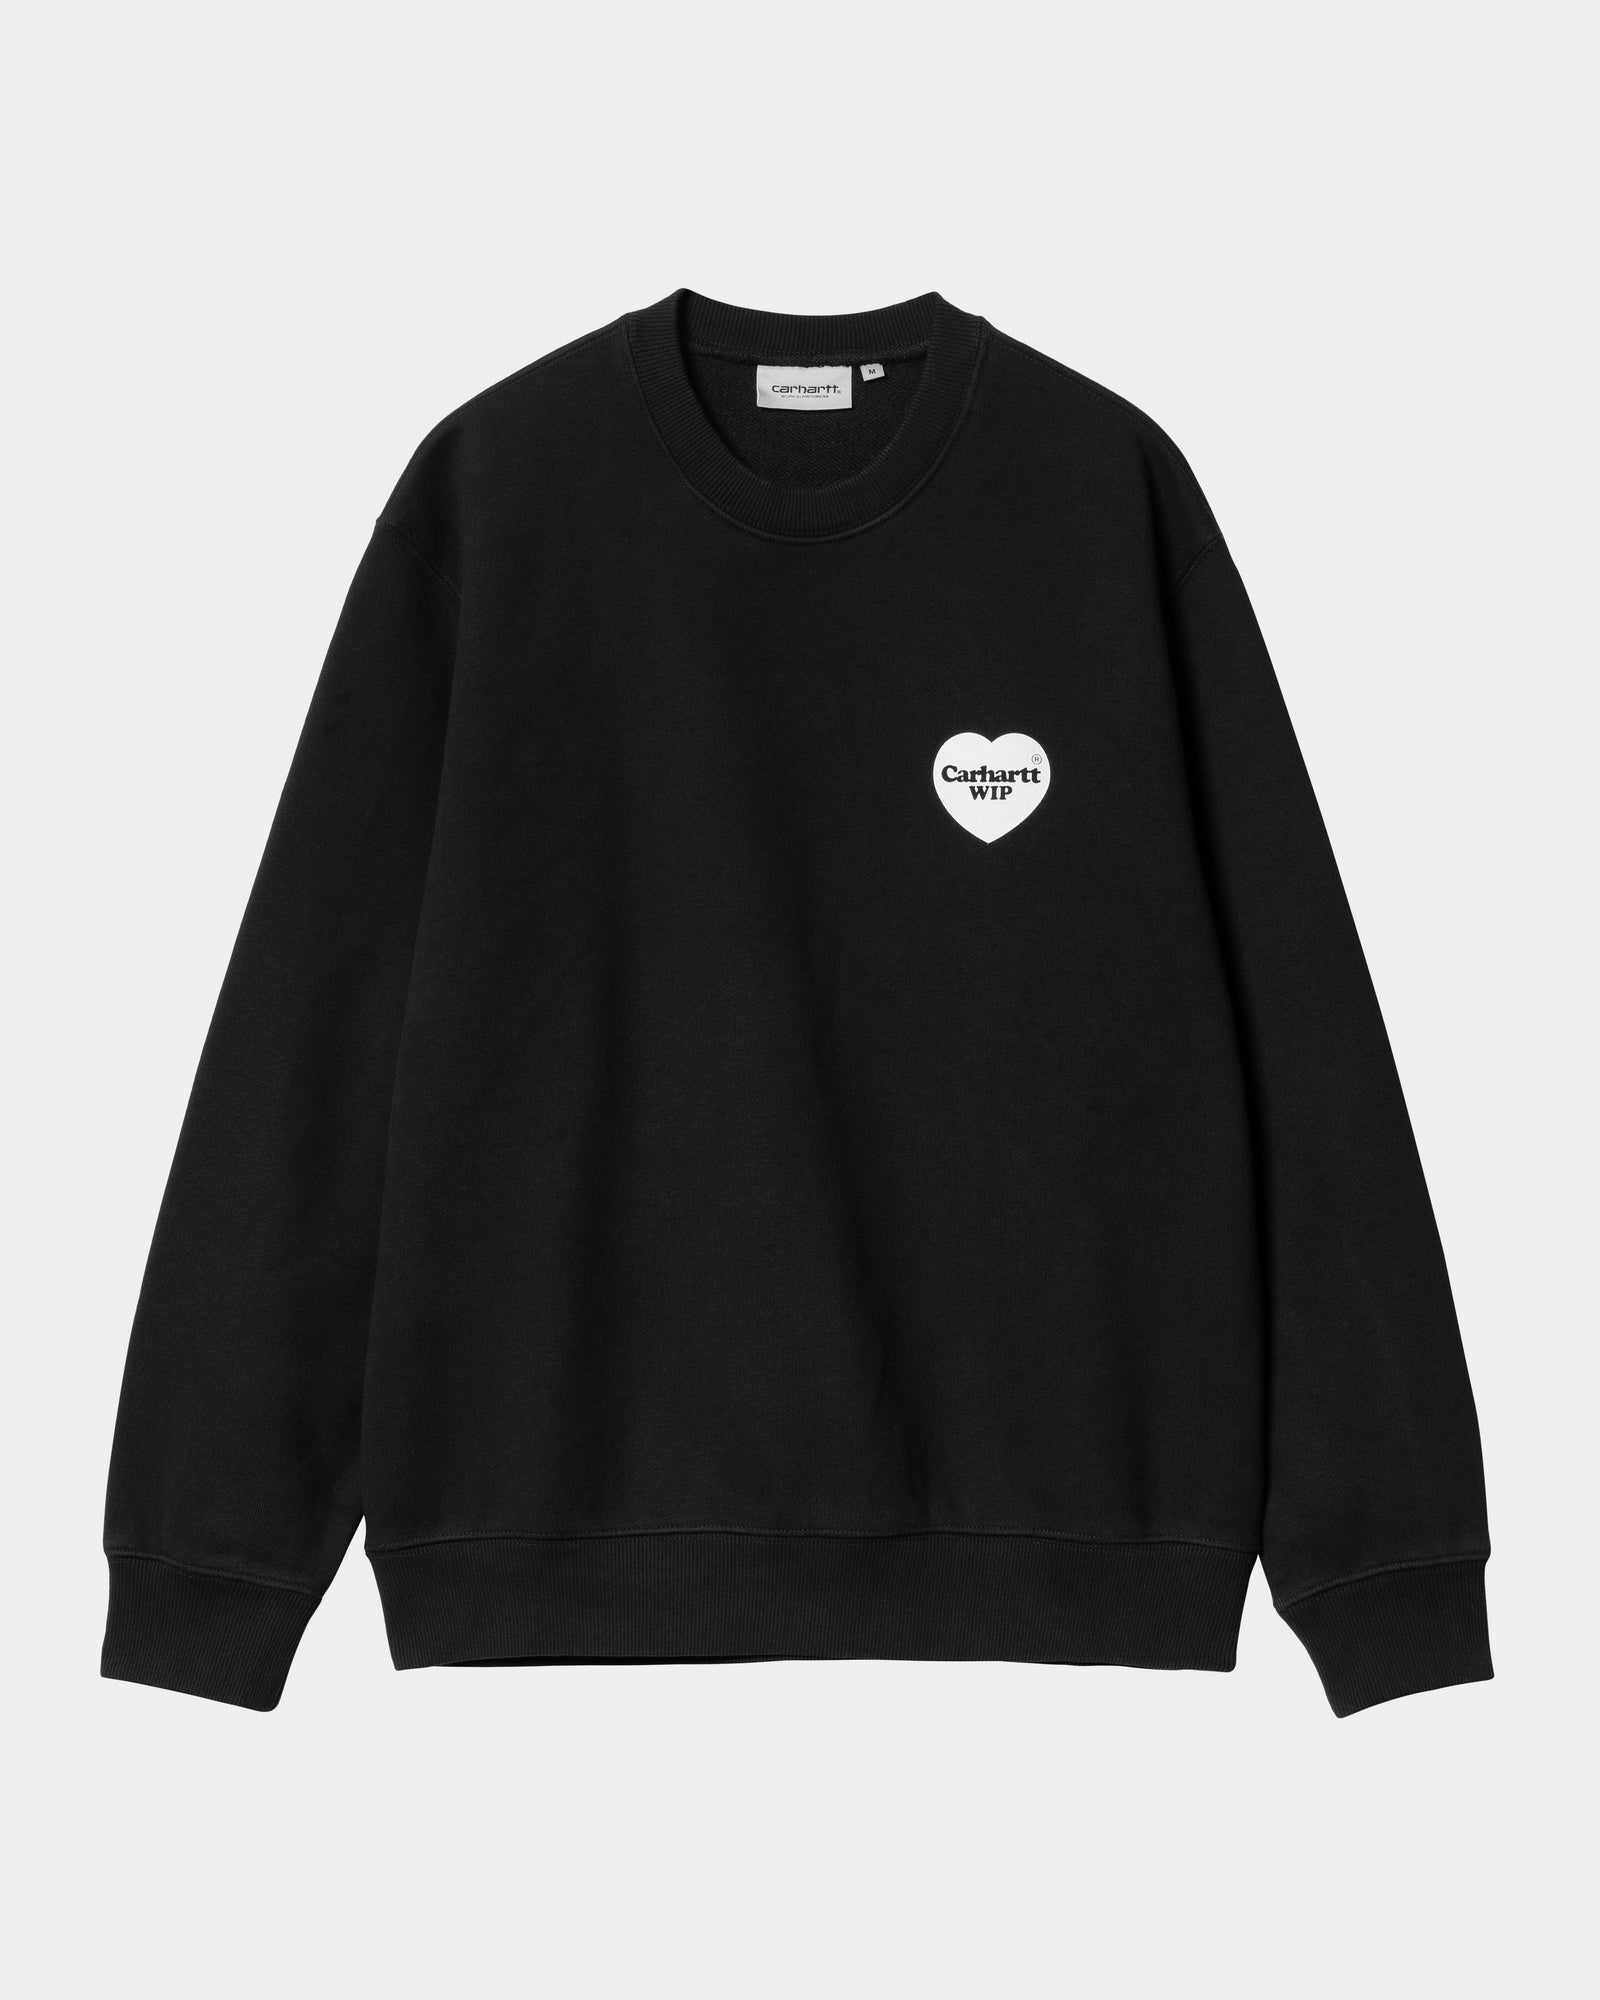 칼하트WIP Carhartt Heart Bandana Sweatshirt,Black / White